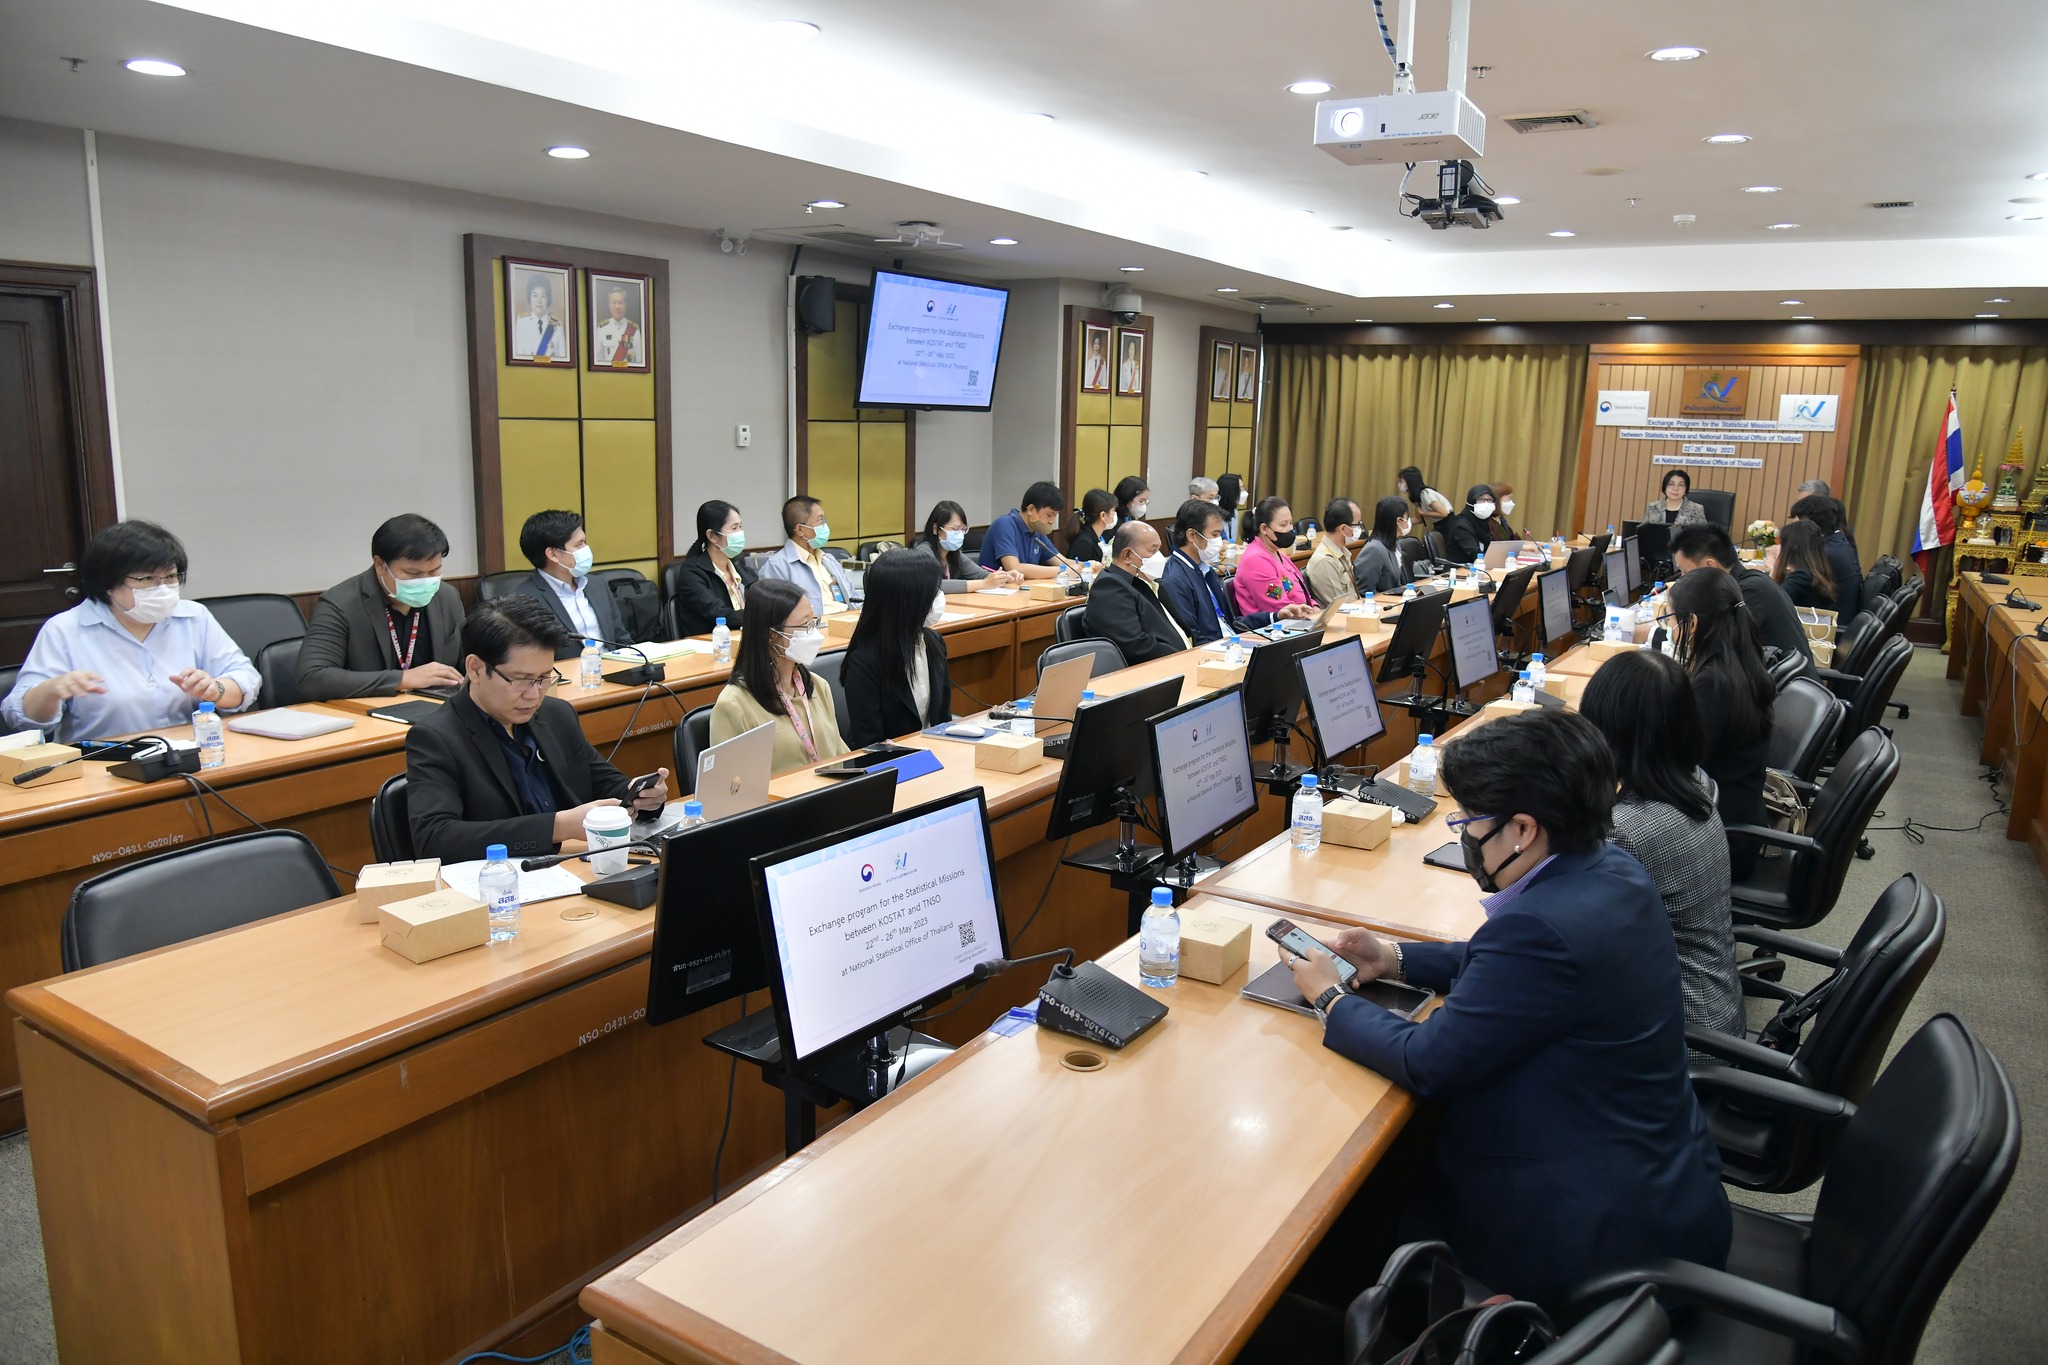 การประชุมแลกเปลี่ยนประสบการณ์การพัฒนางานด้านสถิติ  ระหว่างสำนักงานสถิติแห่งชาติประเทศไทย และสาธารณรัฐเกาหลี (KOSTAT)